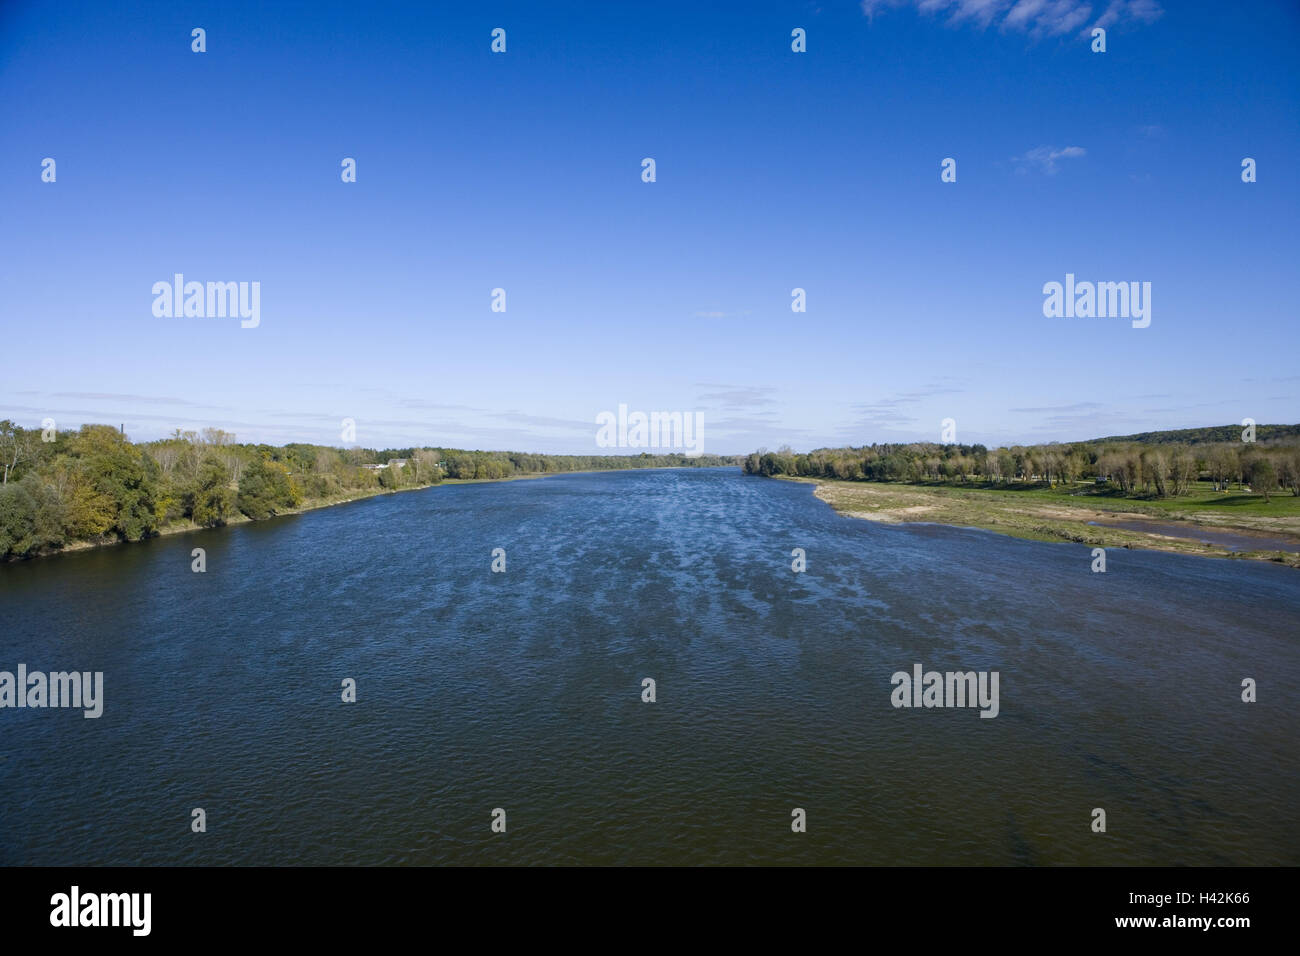 France, Centre, Loir-et-Cher, Chaumont-sur-Loire, river Loire, river scenery, Stock Photo